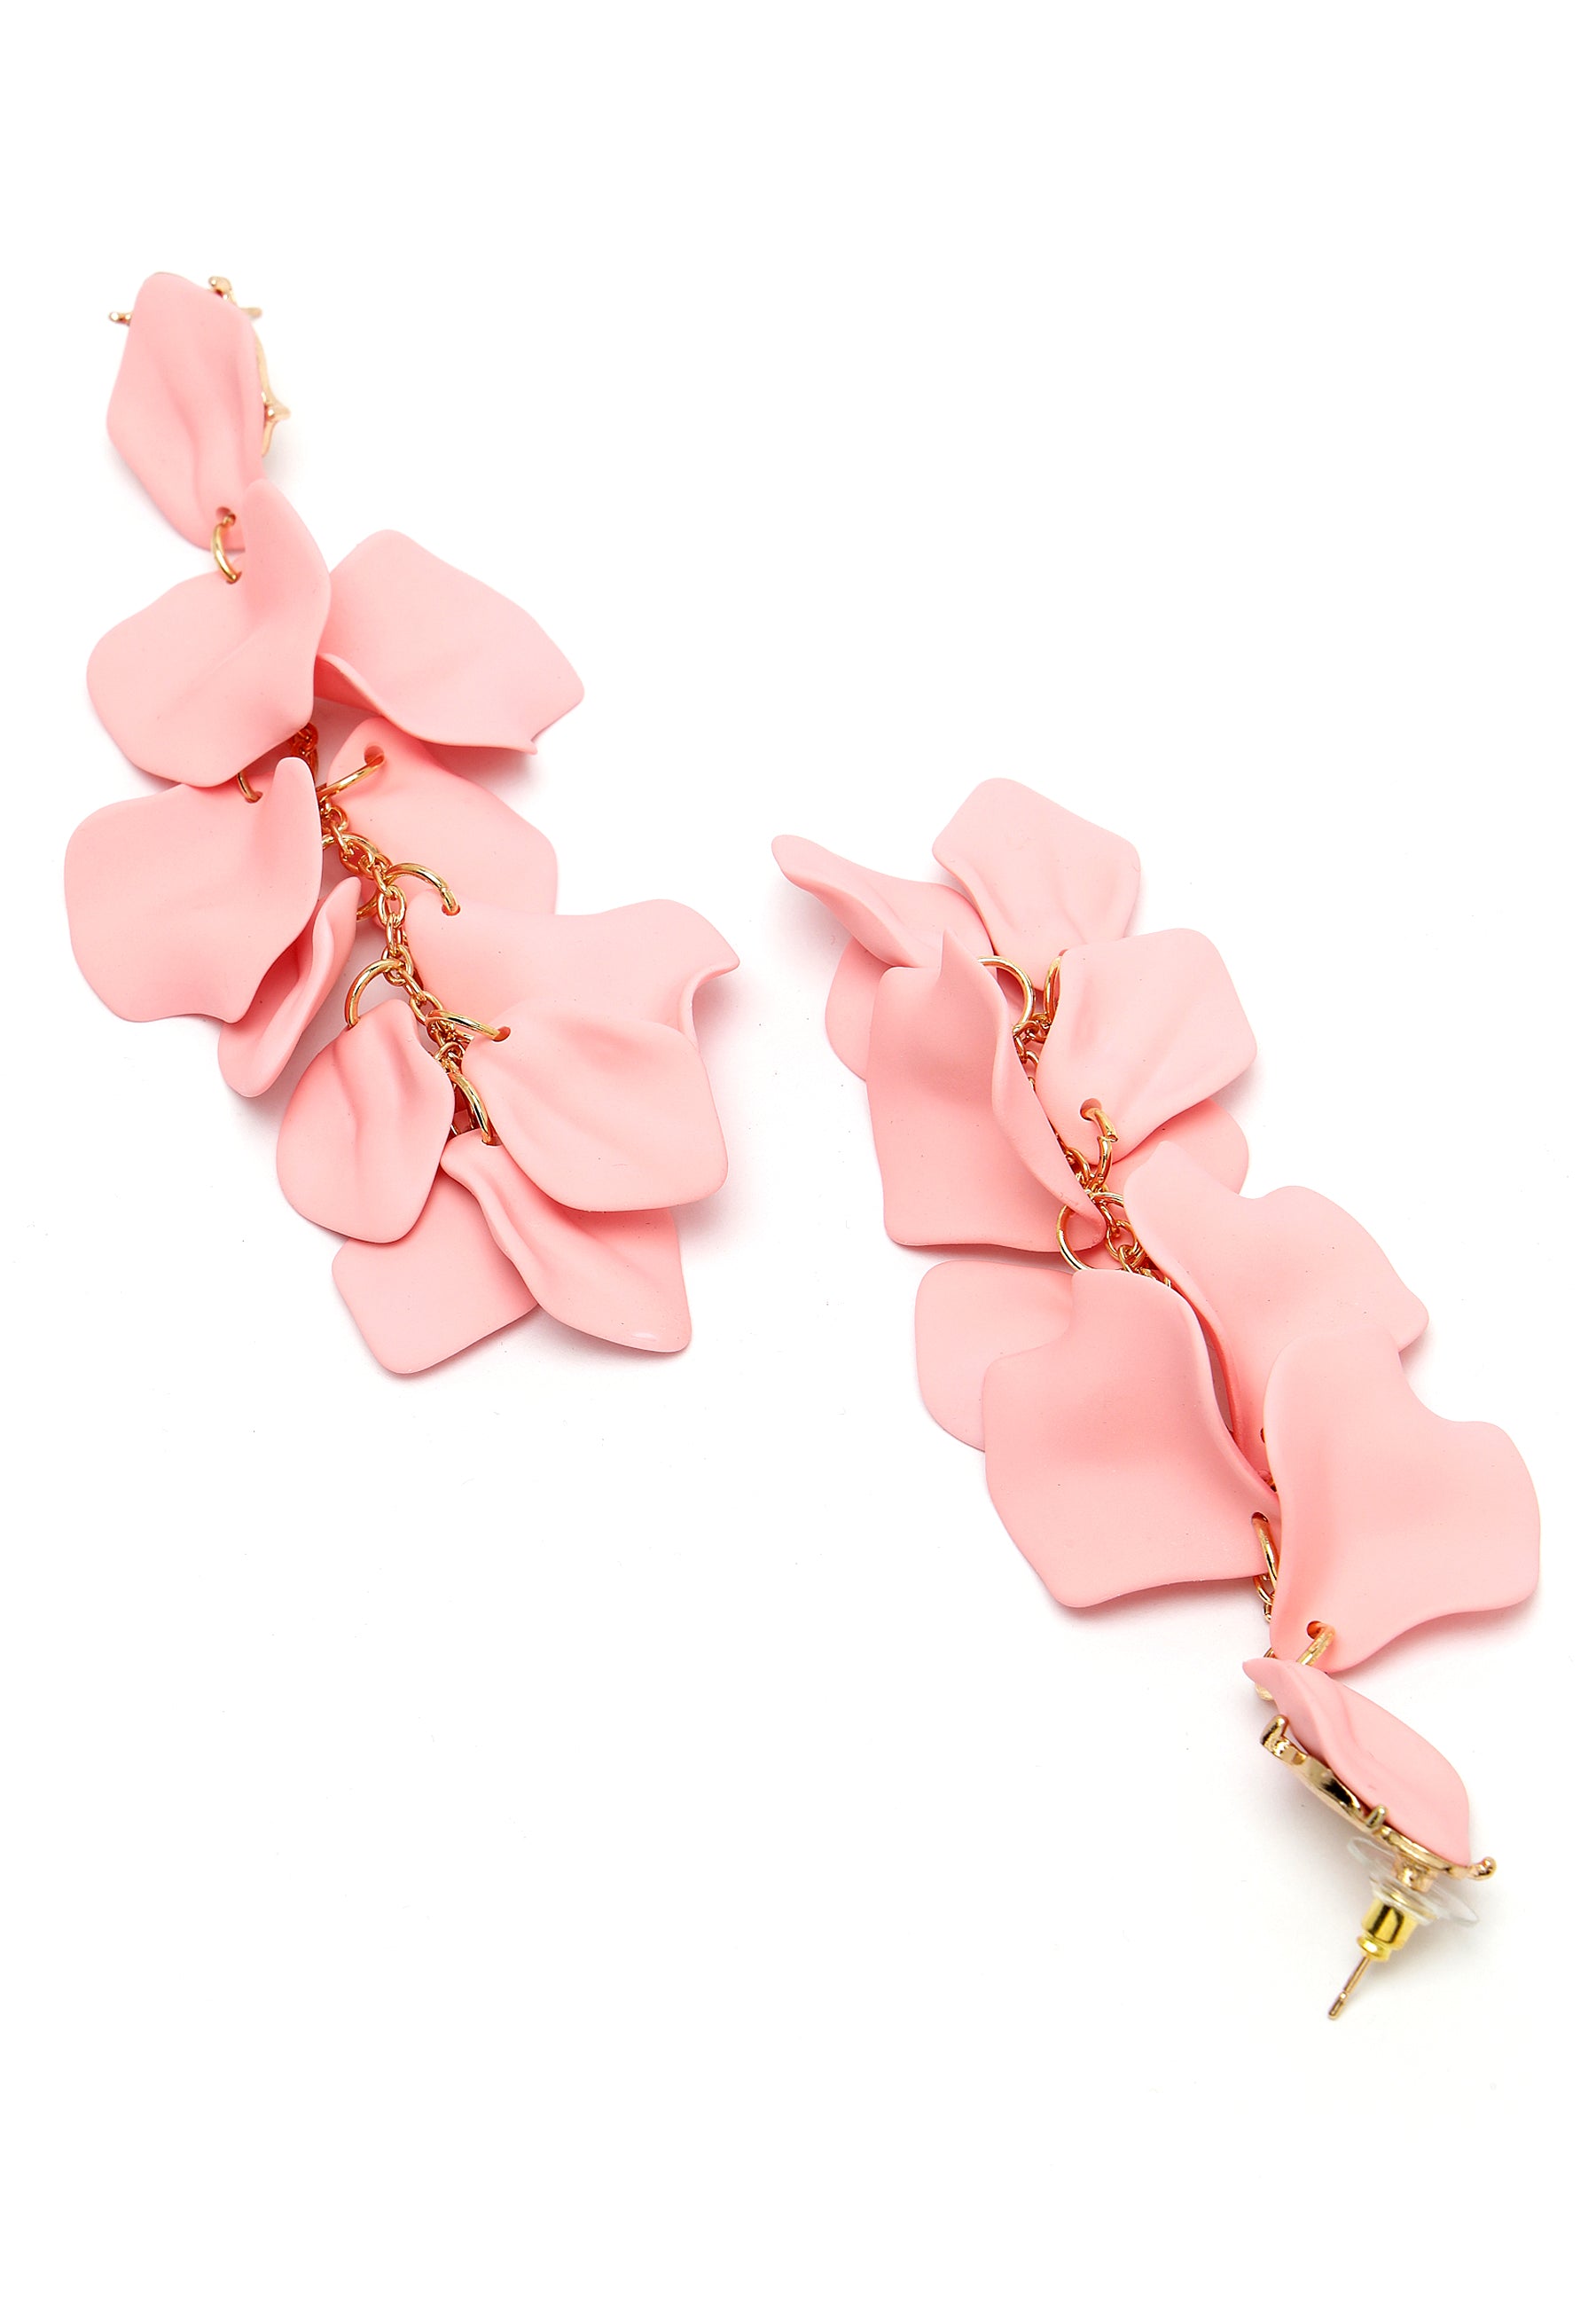 Boucles d'oreilles pendantes en forme de pétale de rose rose clair.